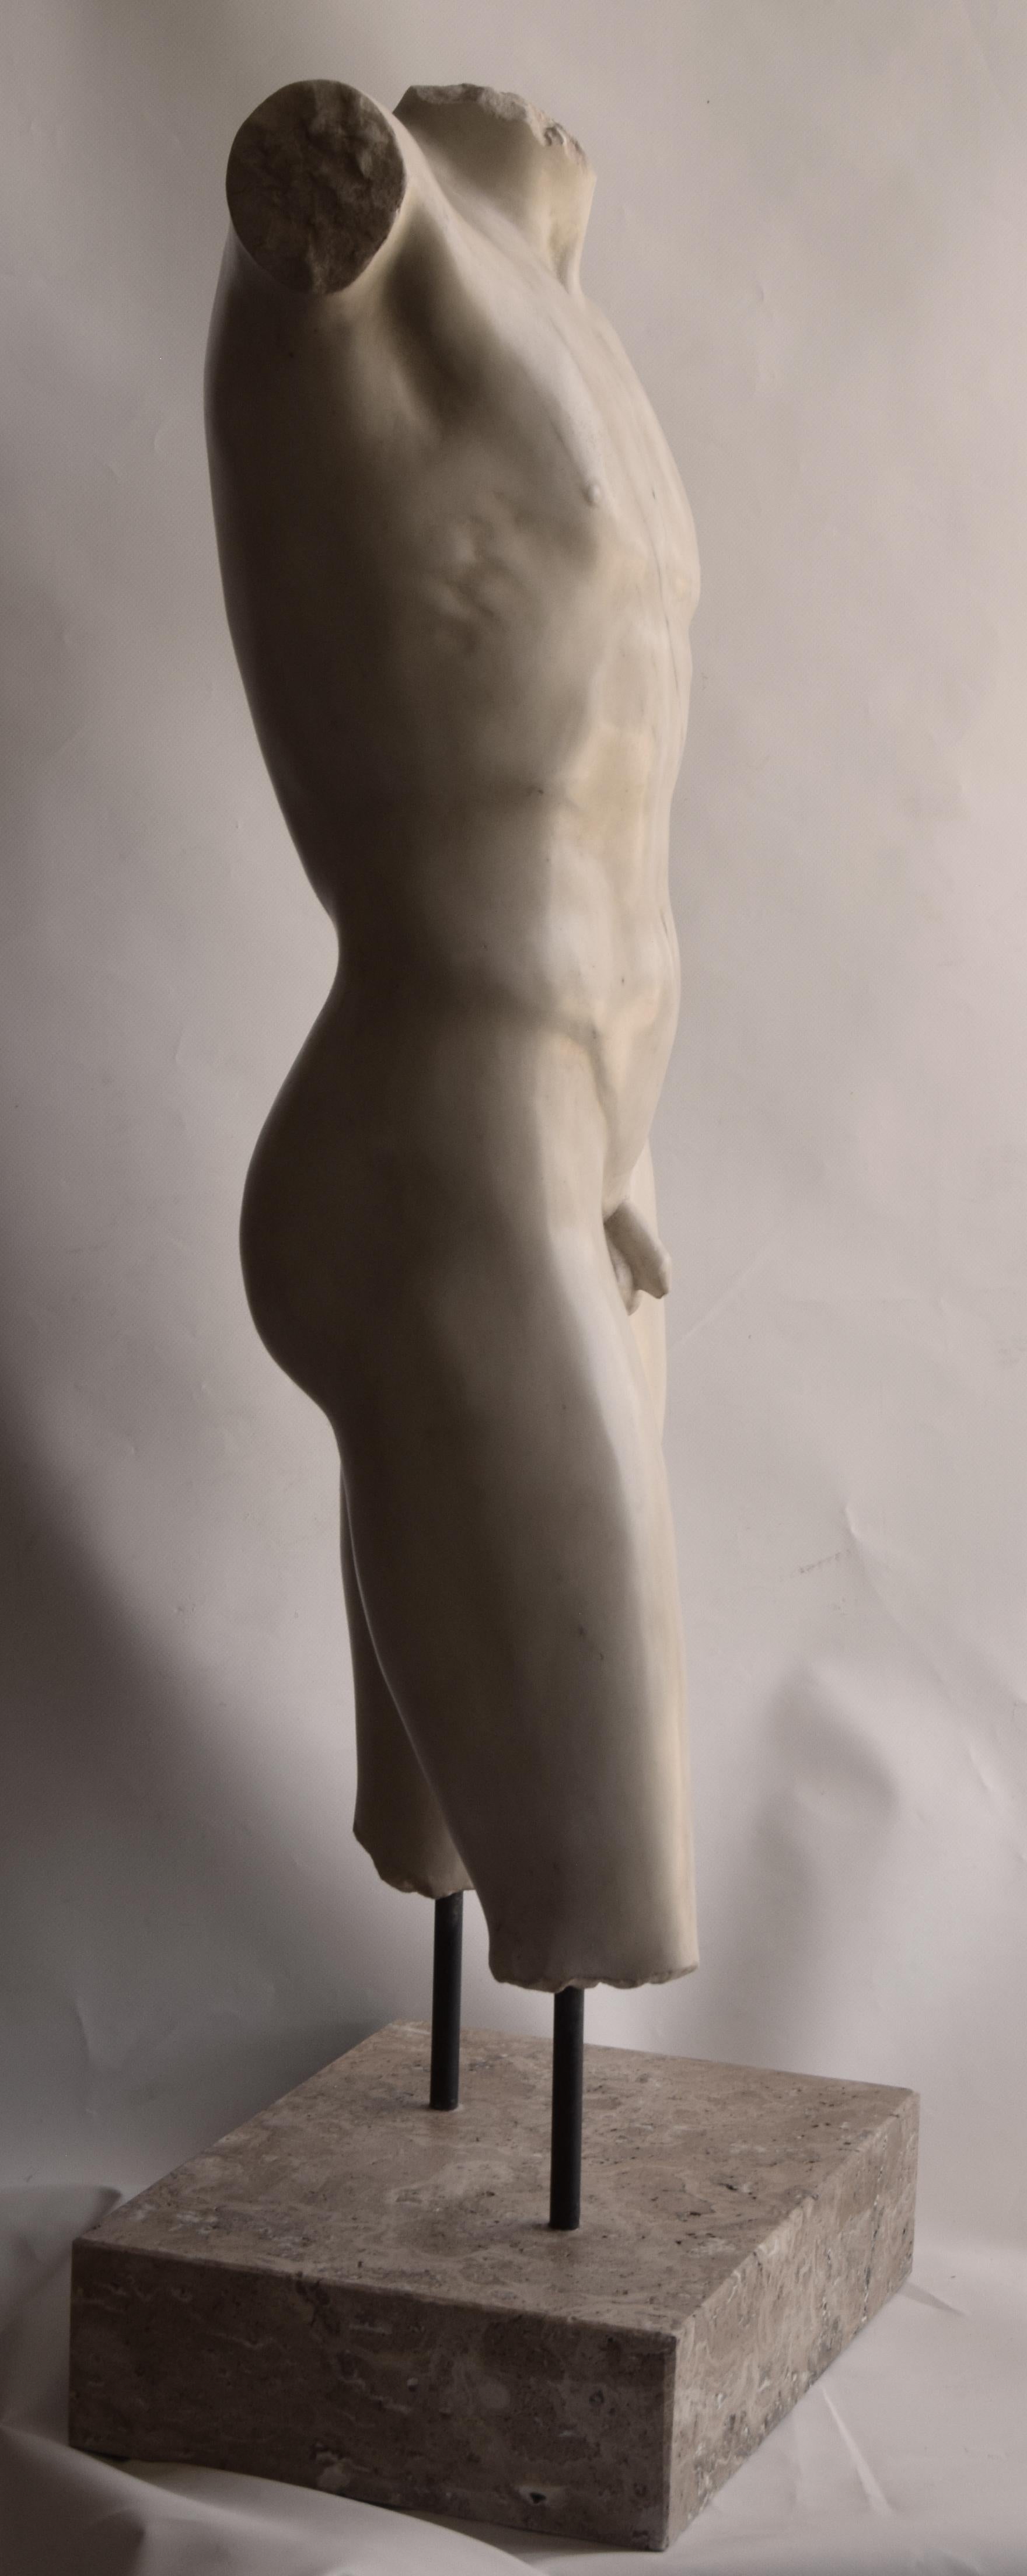 Carrara Marble Torso maschile in stile Grecia classica scolpito su marmo bianco di Carrara For Sale